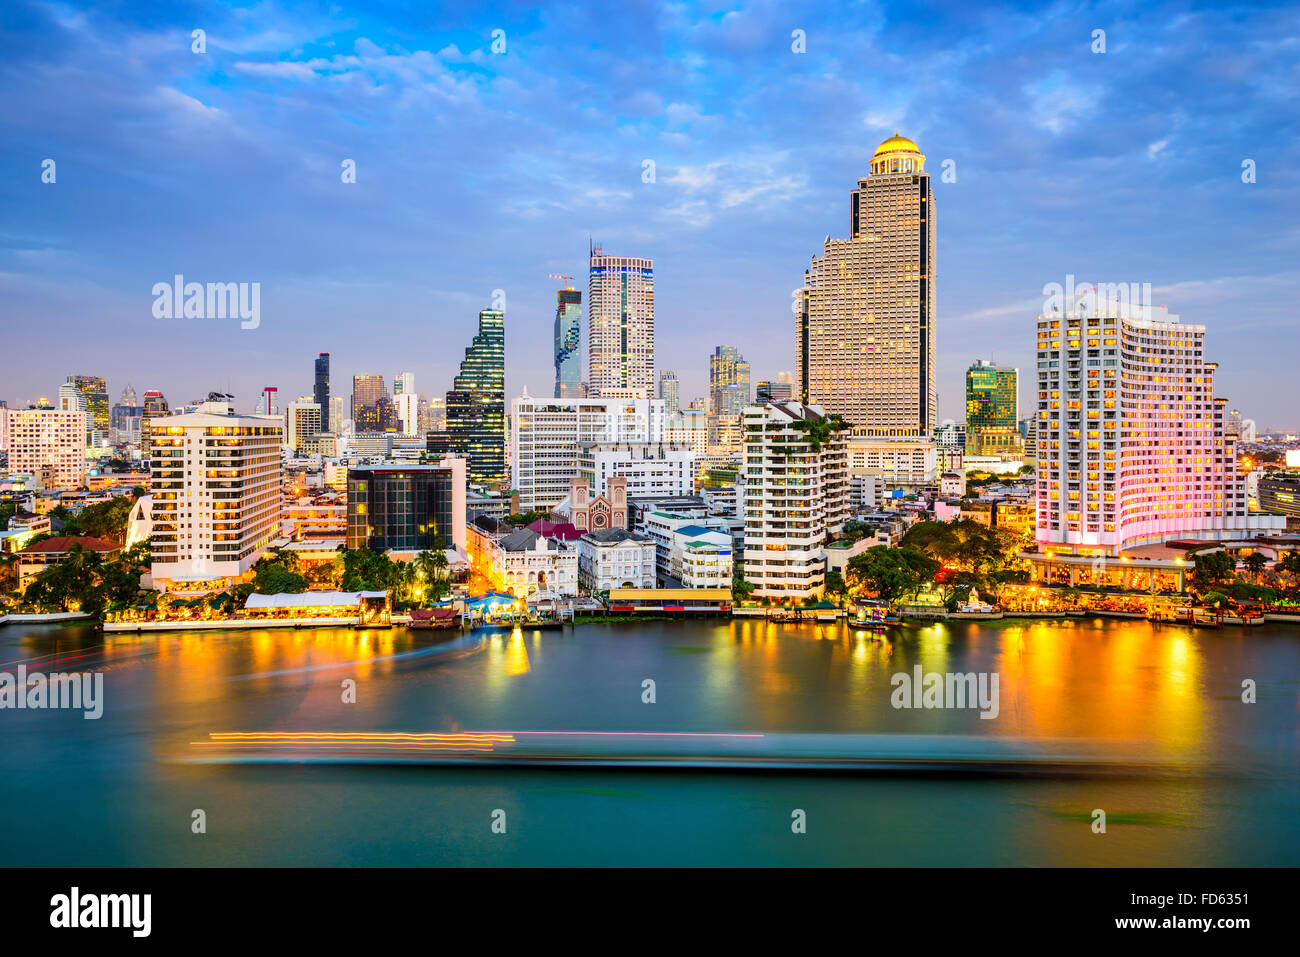 Bangkok, Thailand skyline on the Chao Phraya River. Stock Photo